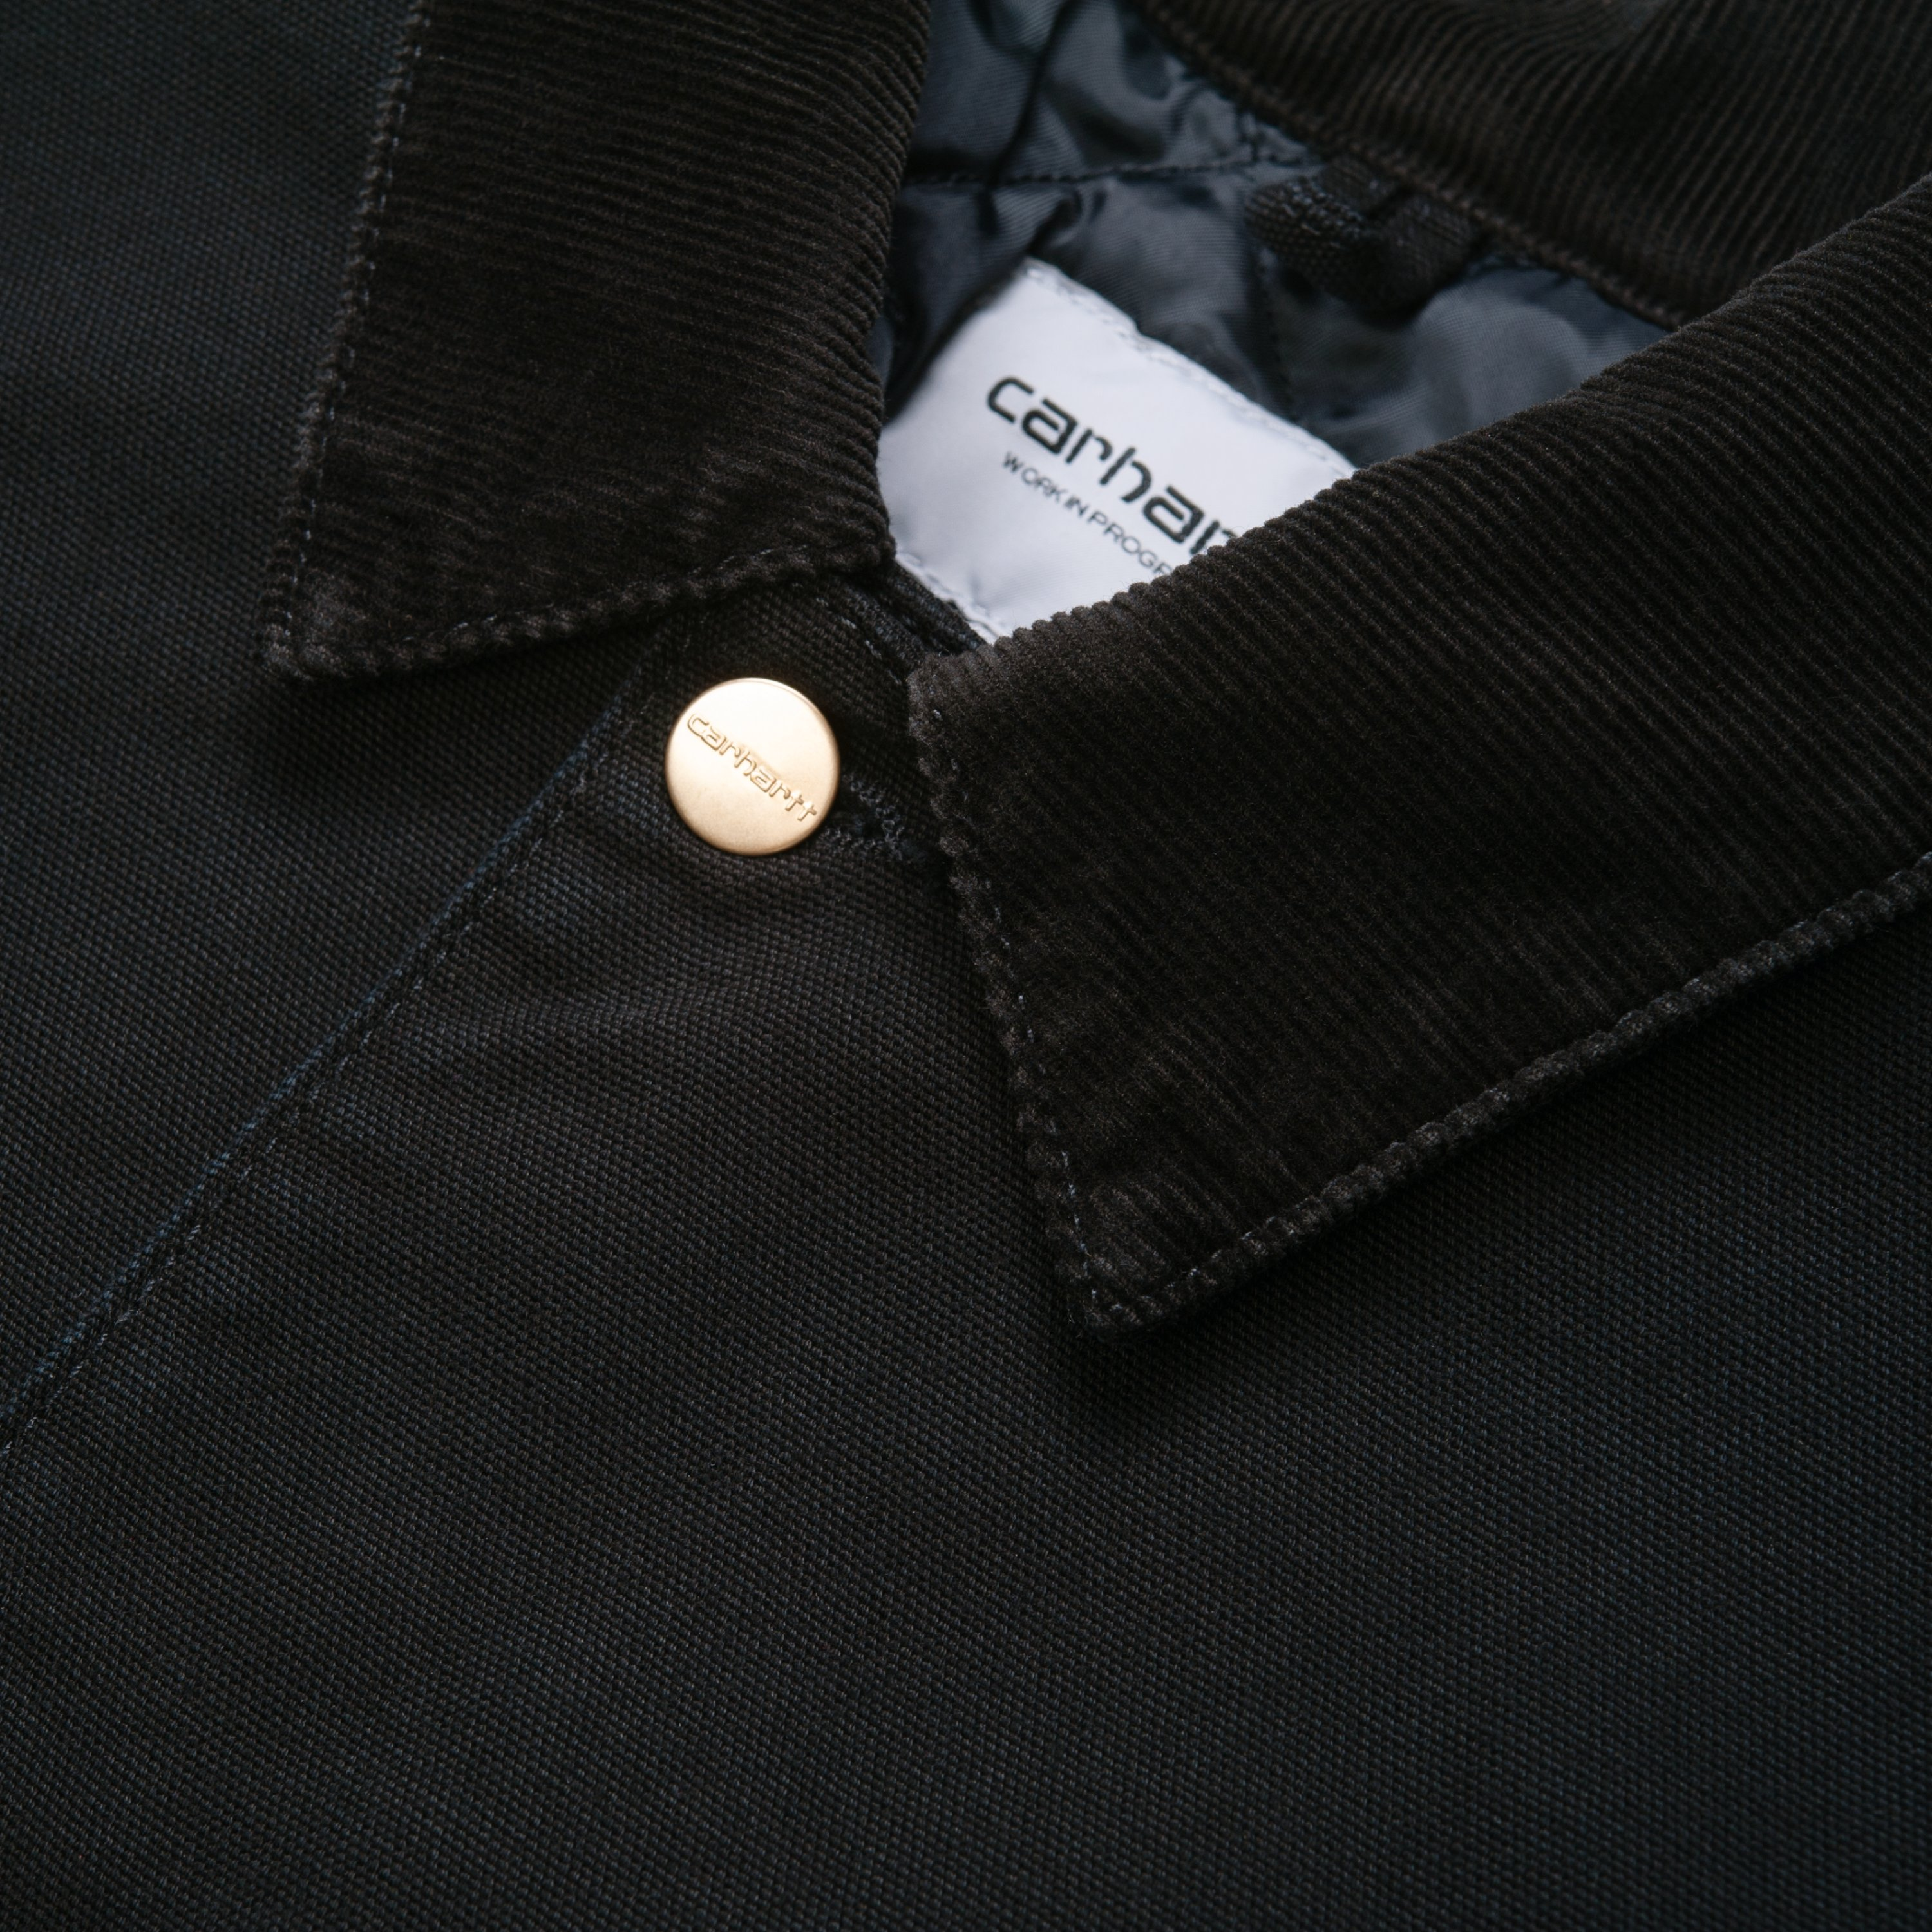 Carhartt WIP OG Chore Coat, Black / Black | Official Online Store